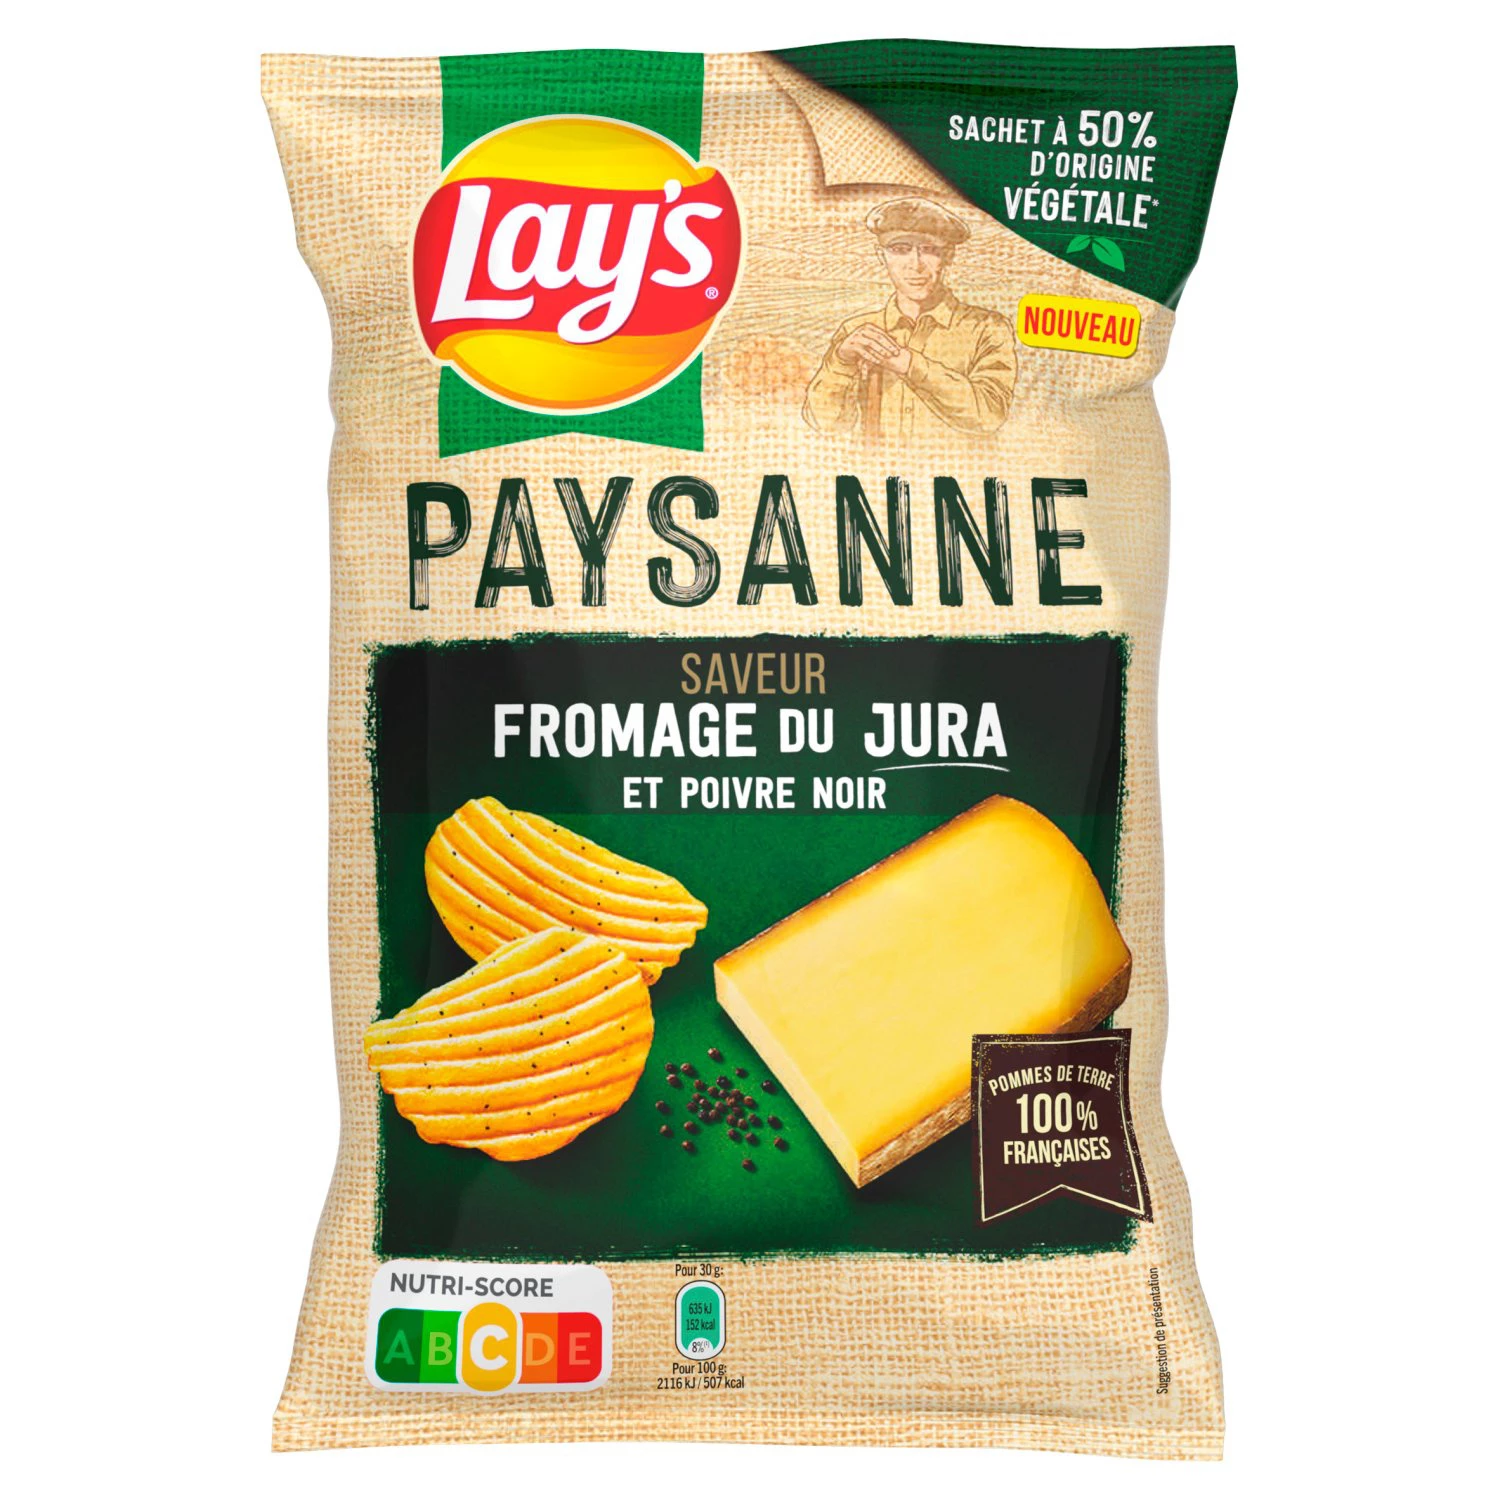 Chips Recette Paysanne Saveur Fromage du Jura et Poivre Noir,120g - LAY'S